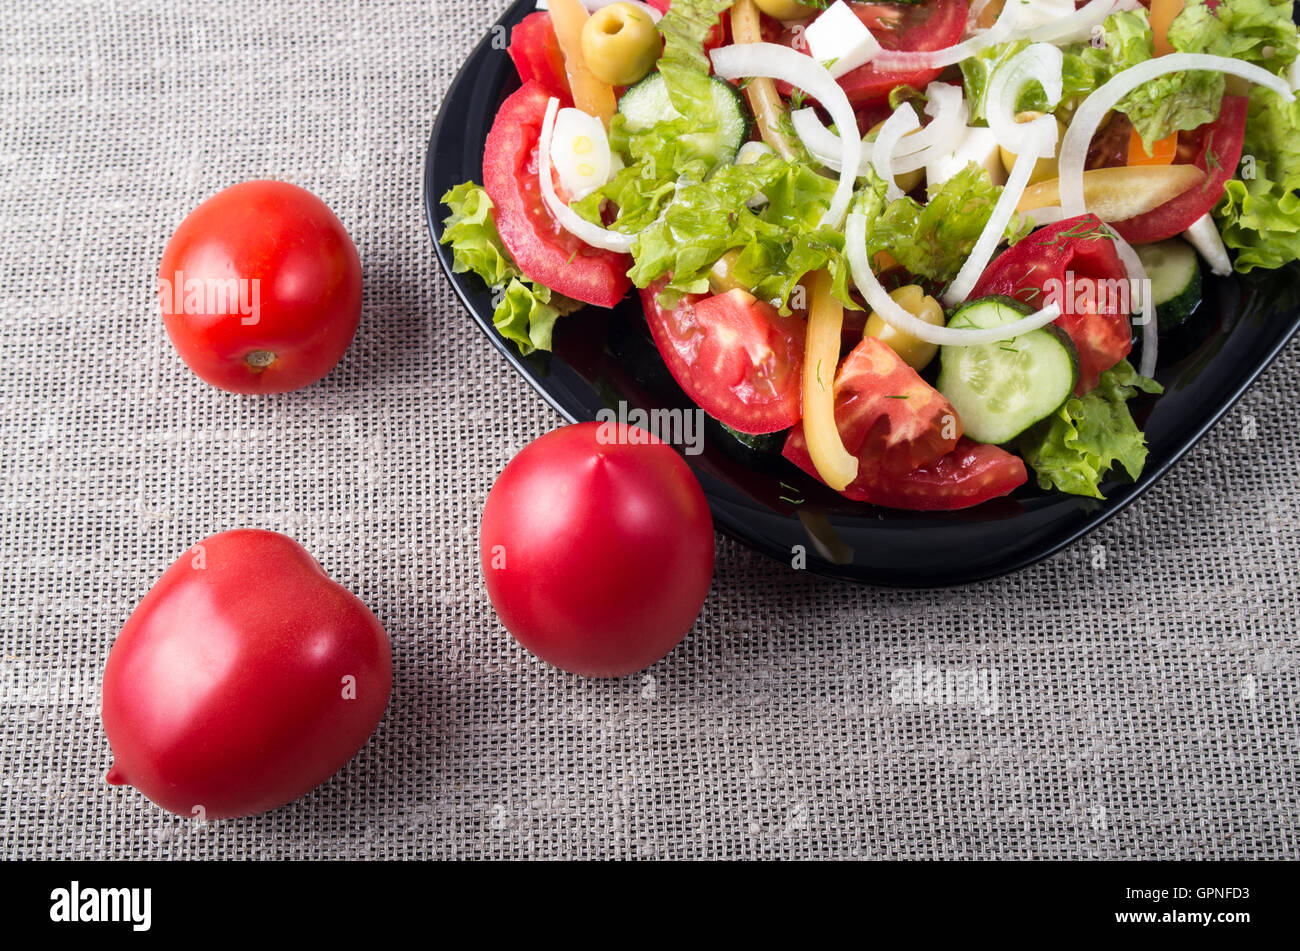 Vue de dessus Gros plan sur la tomate fraîche et une partie d'une assiette avec la salade végétarienne sur une table recouverte d'un tapis gris Banque D'Images